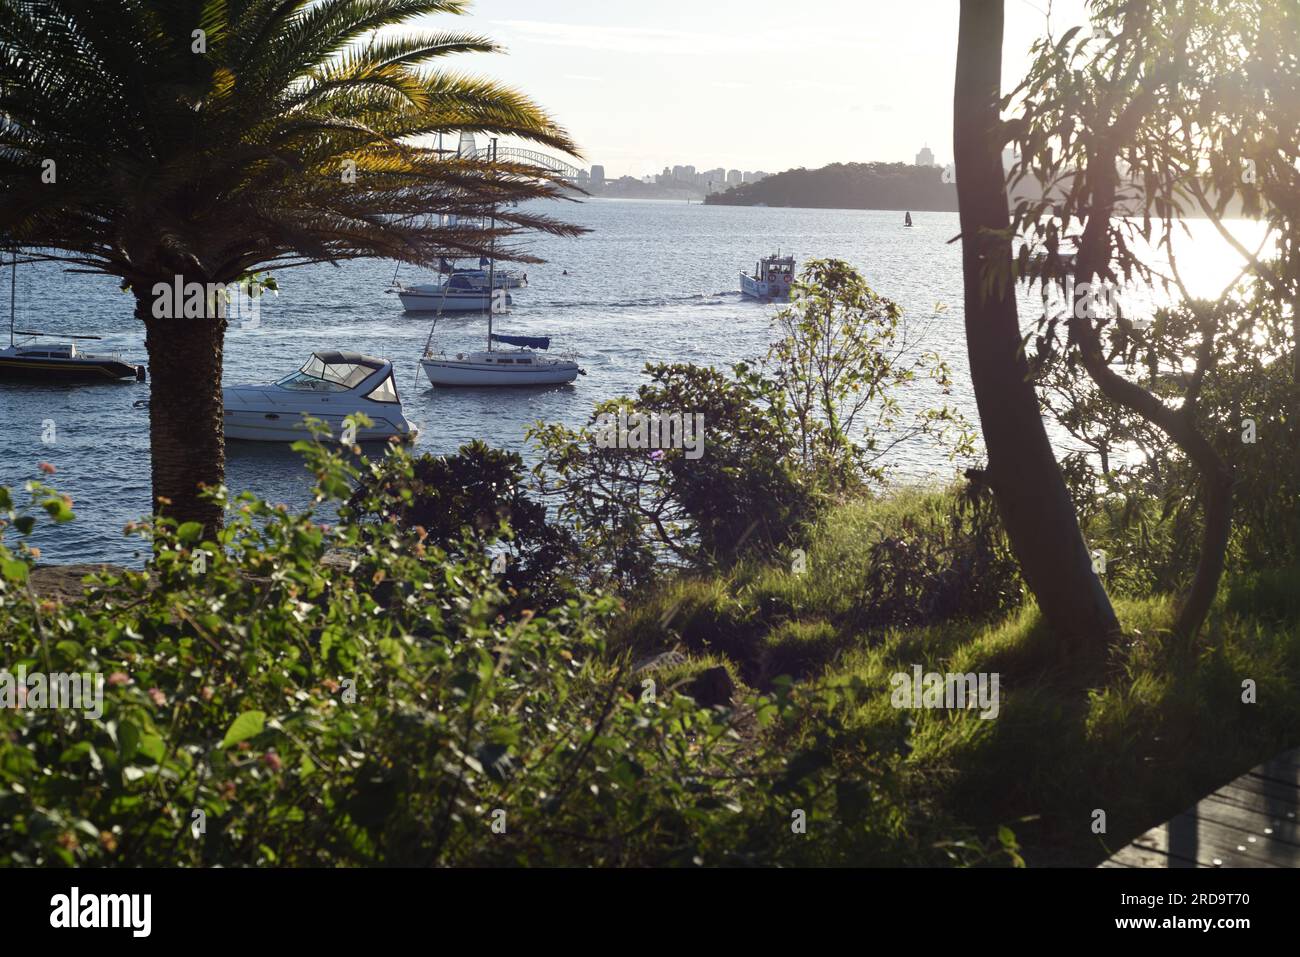 Am späten Nachmittag genießen Sie den Blick auf den Hafen von Sydney vom Eremitage Foreshore Track, Palmen, blaues Wasser, sanftes Licht, grünes Laub und Boote Stockfoto